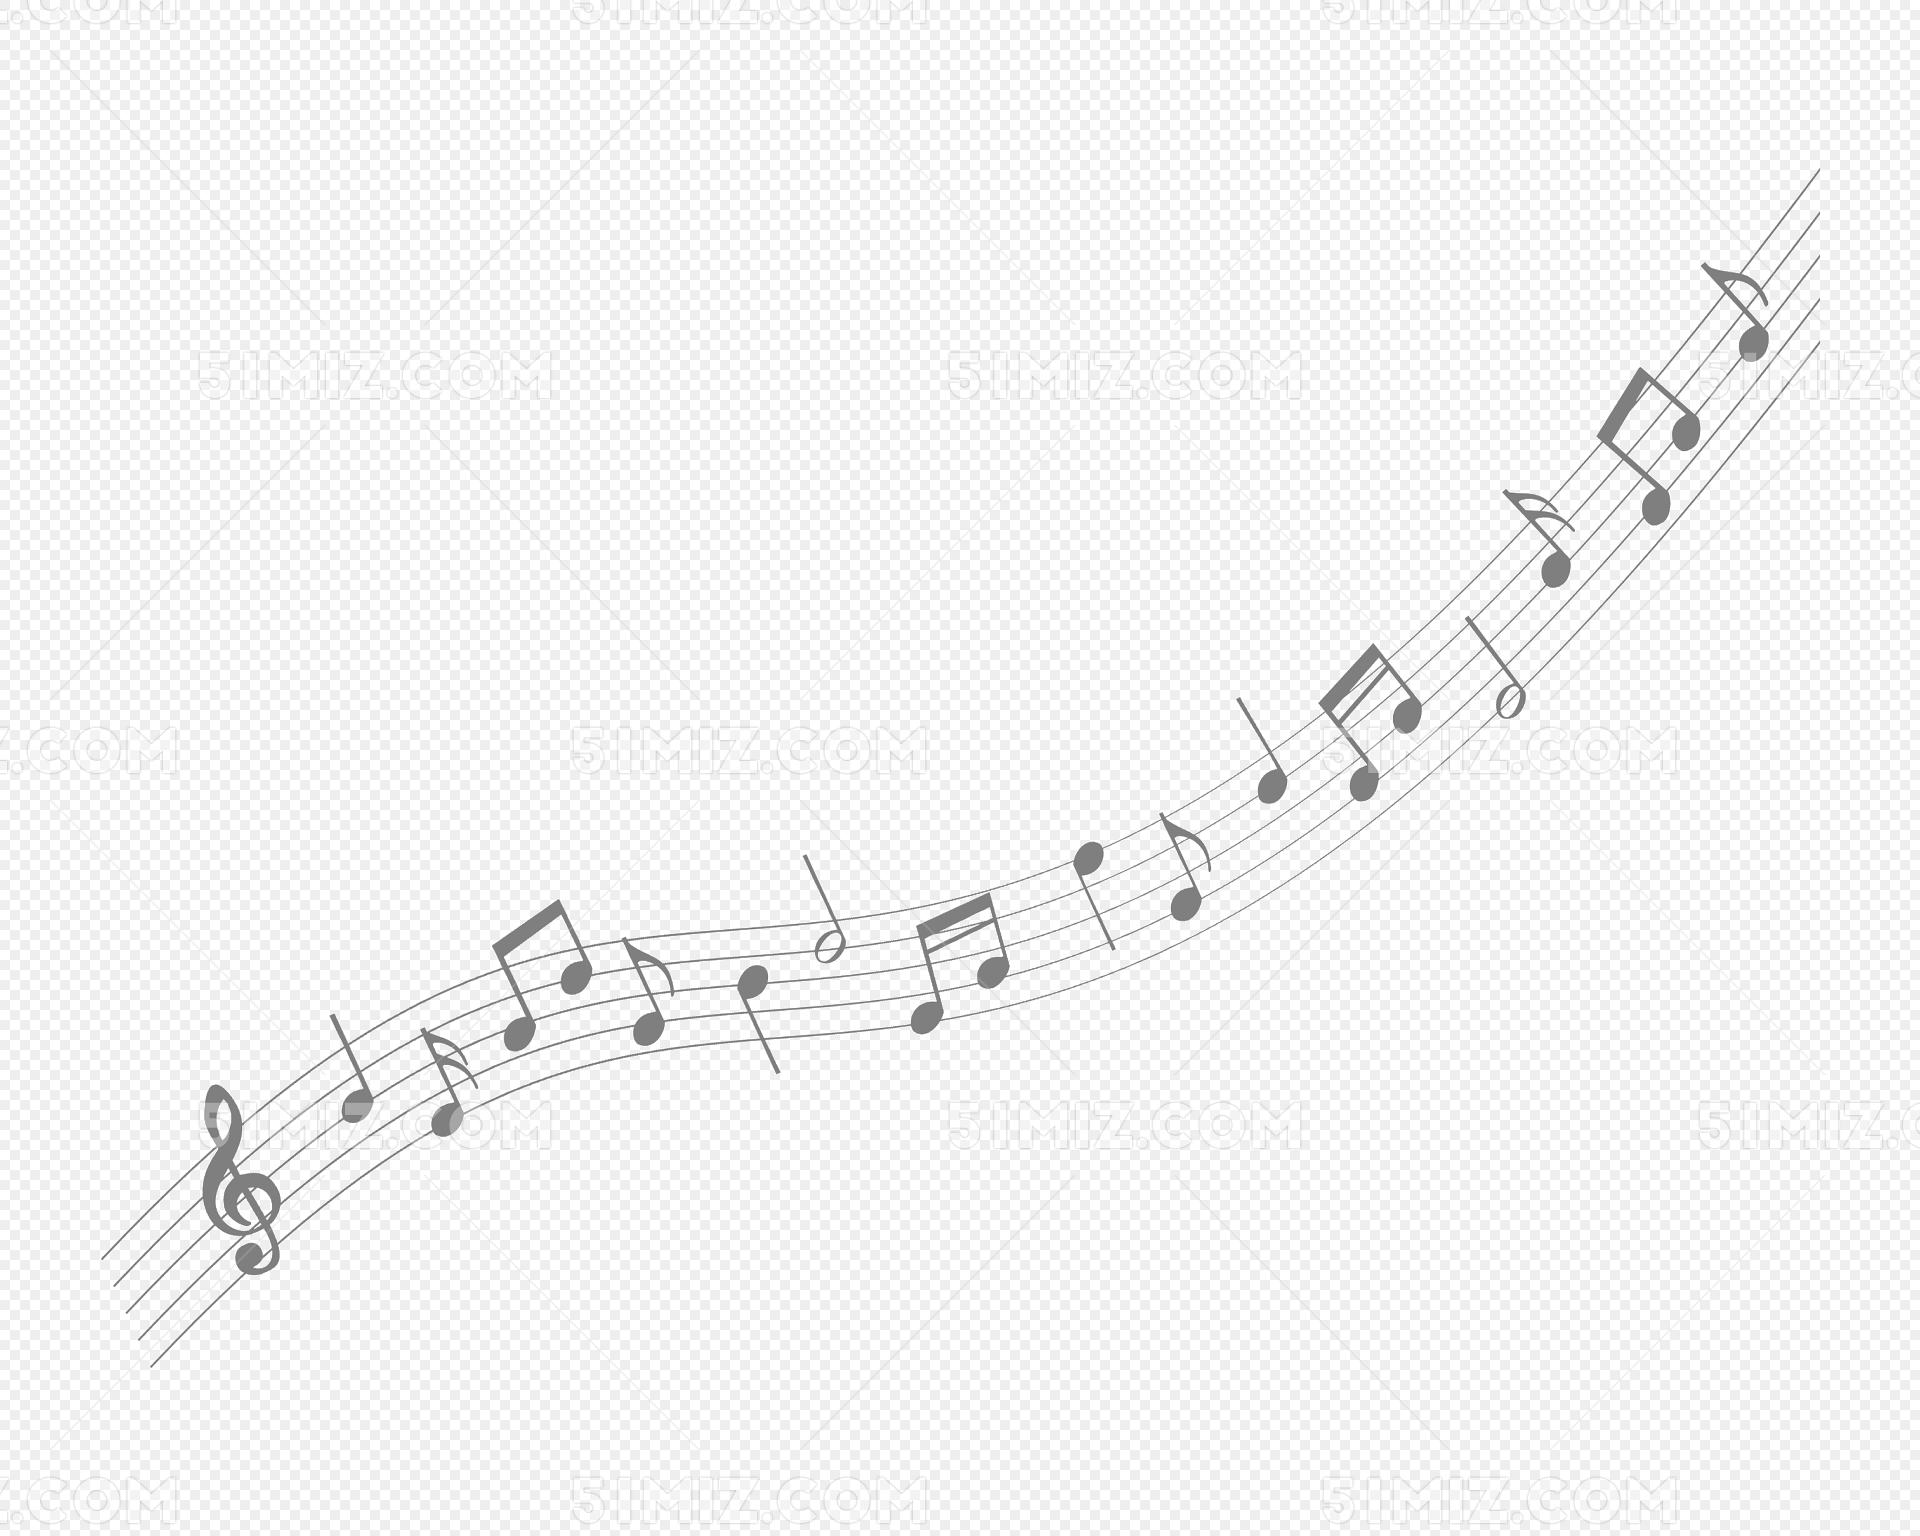 文化艺术节乐器五线谱钢琴音符矢量素材免费下载 - 觅知网